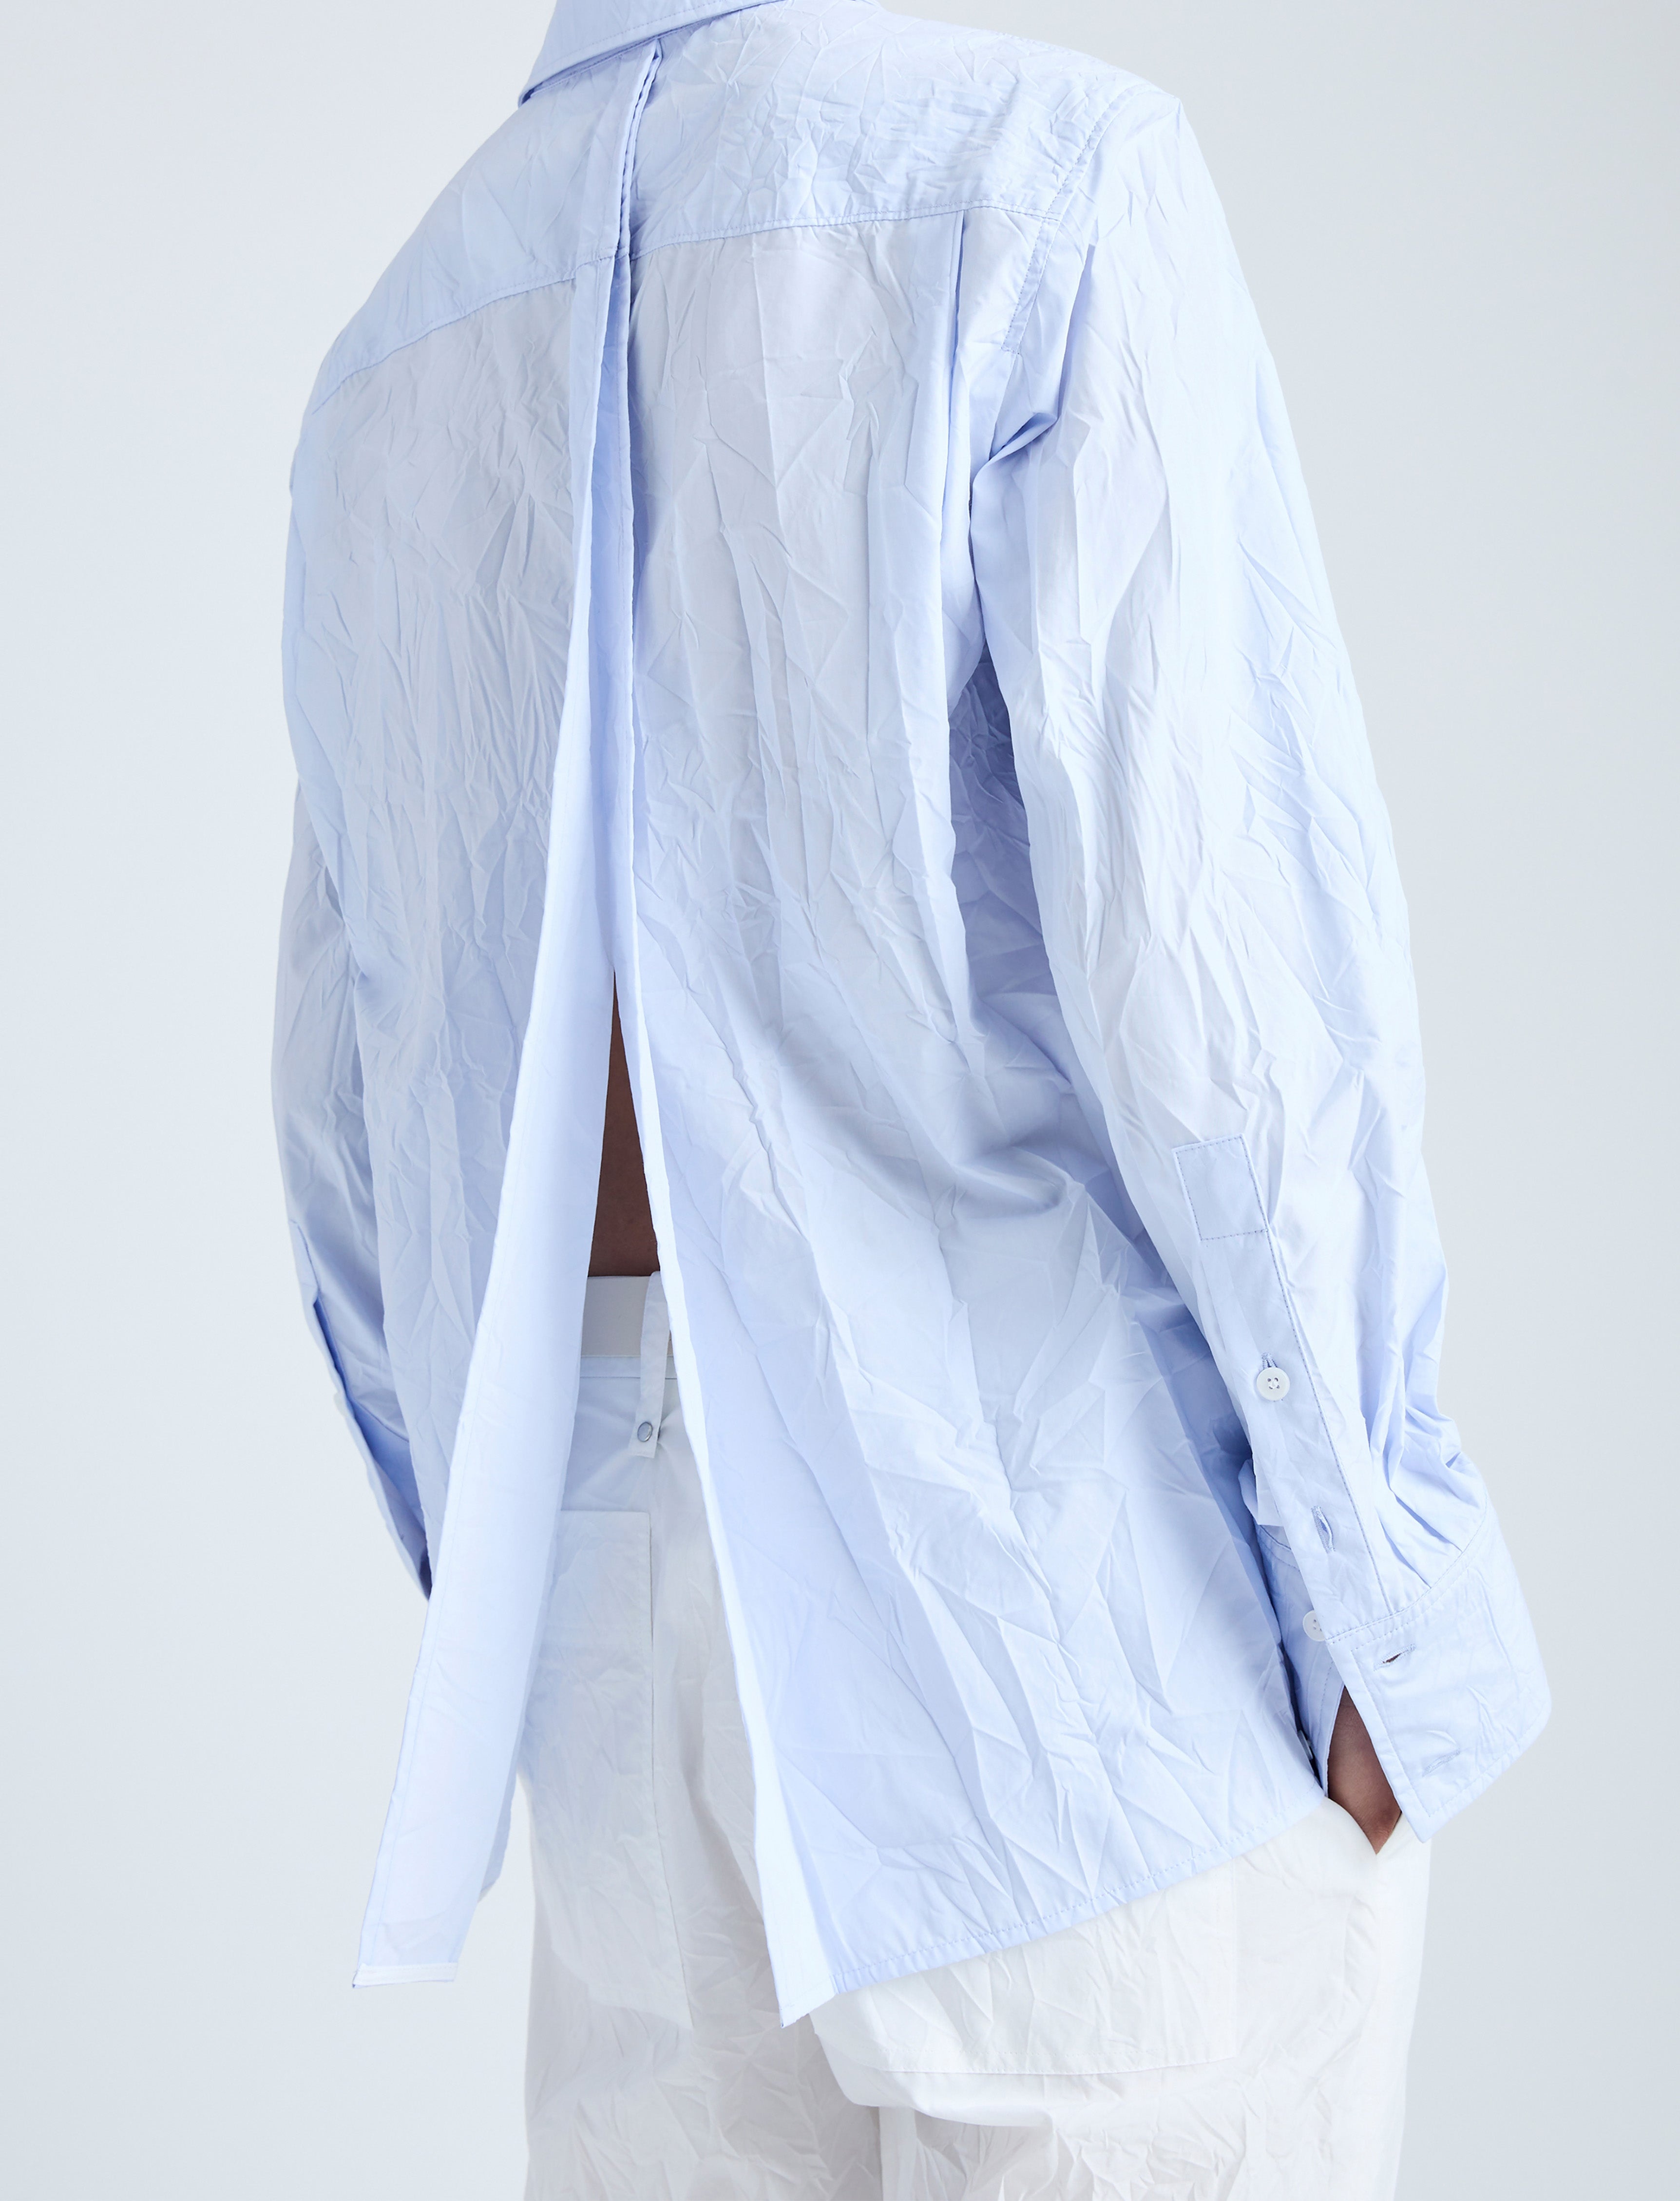 Allen Shirt in Crinkled Cotton Gabardine - 6